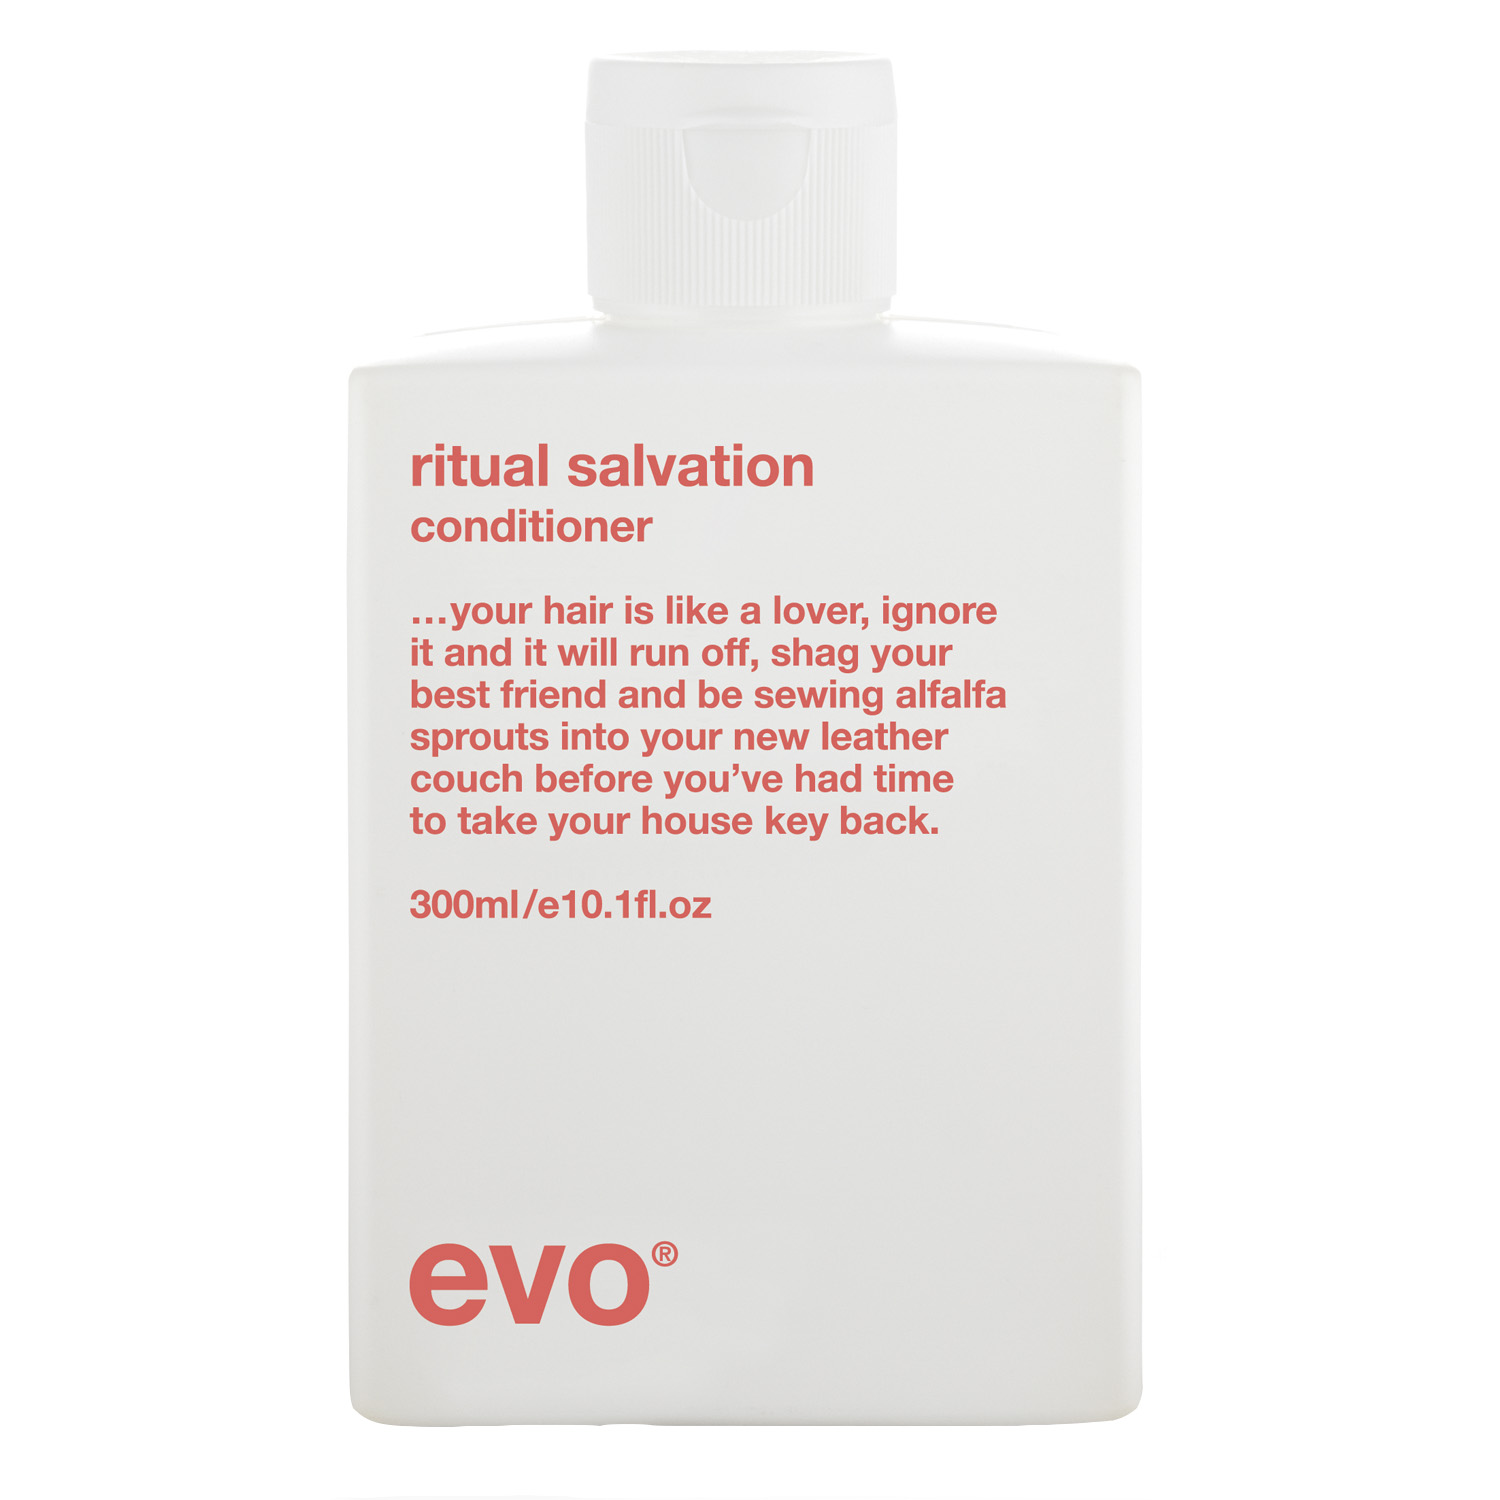 EVO Кондиционер для окрашенных волос [спасение и блаженство], 300 мл (EVO, ritual salvation)